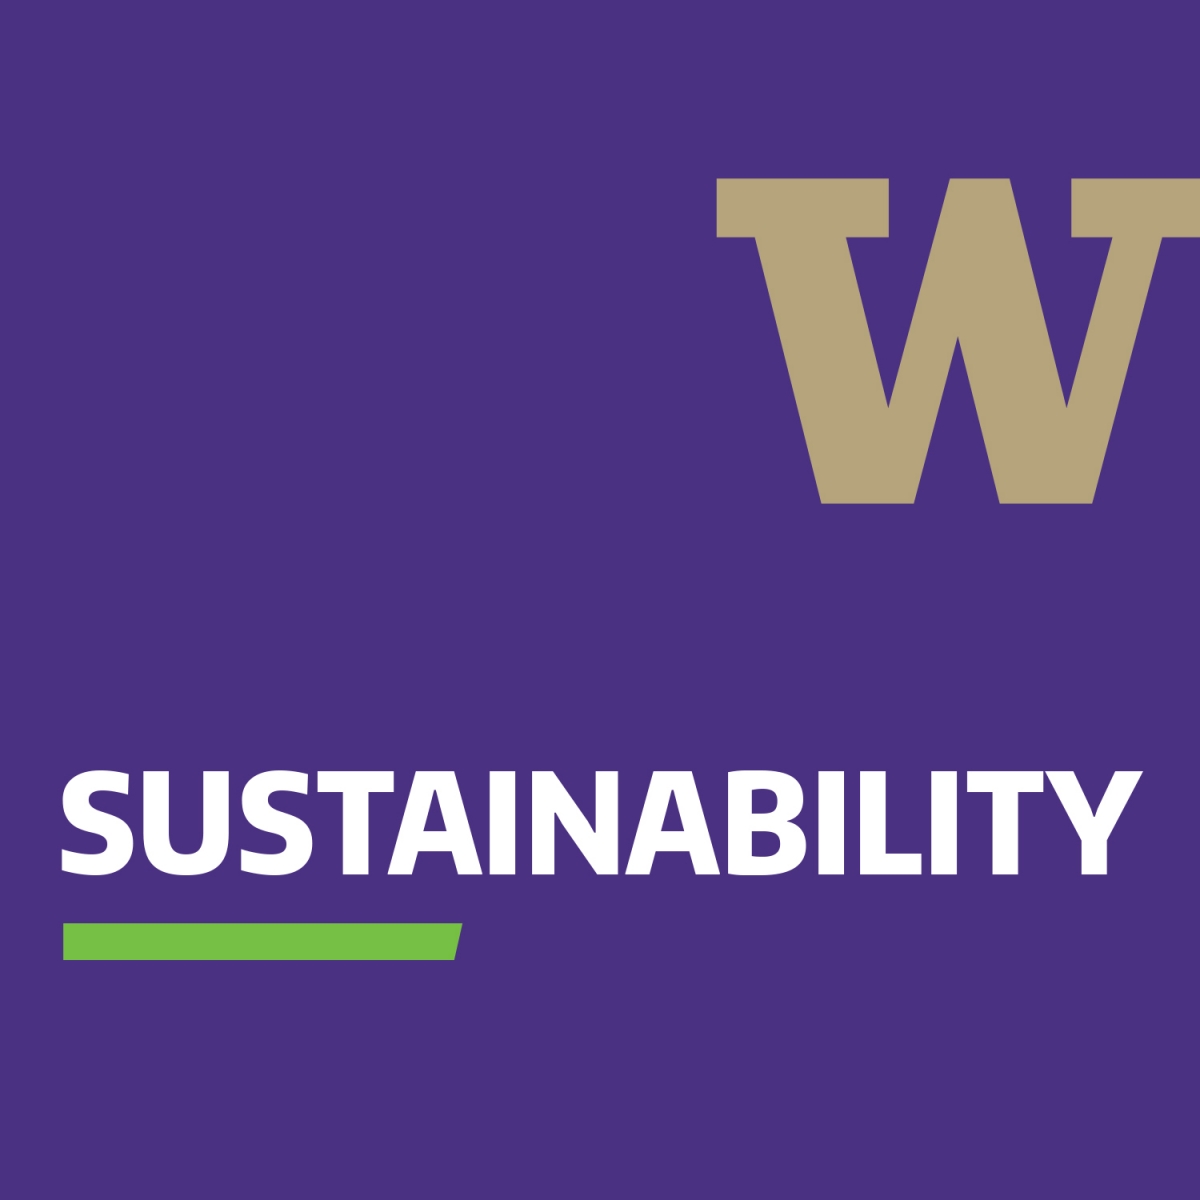 UW Sustainability